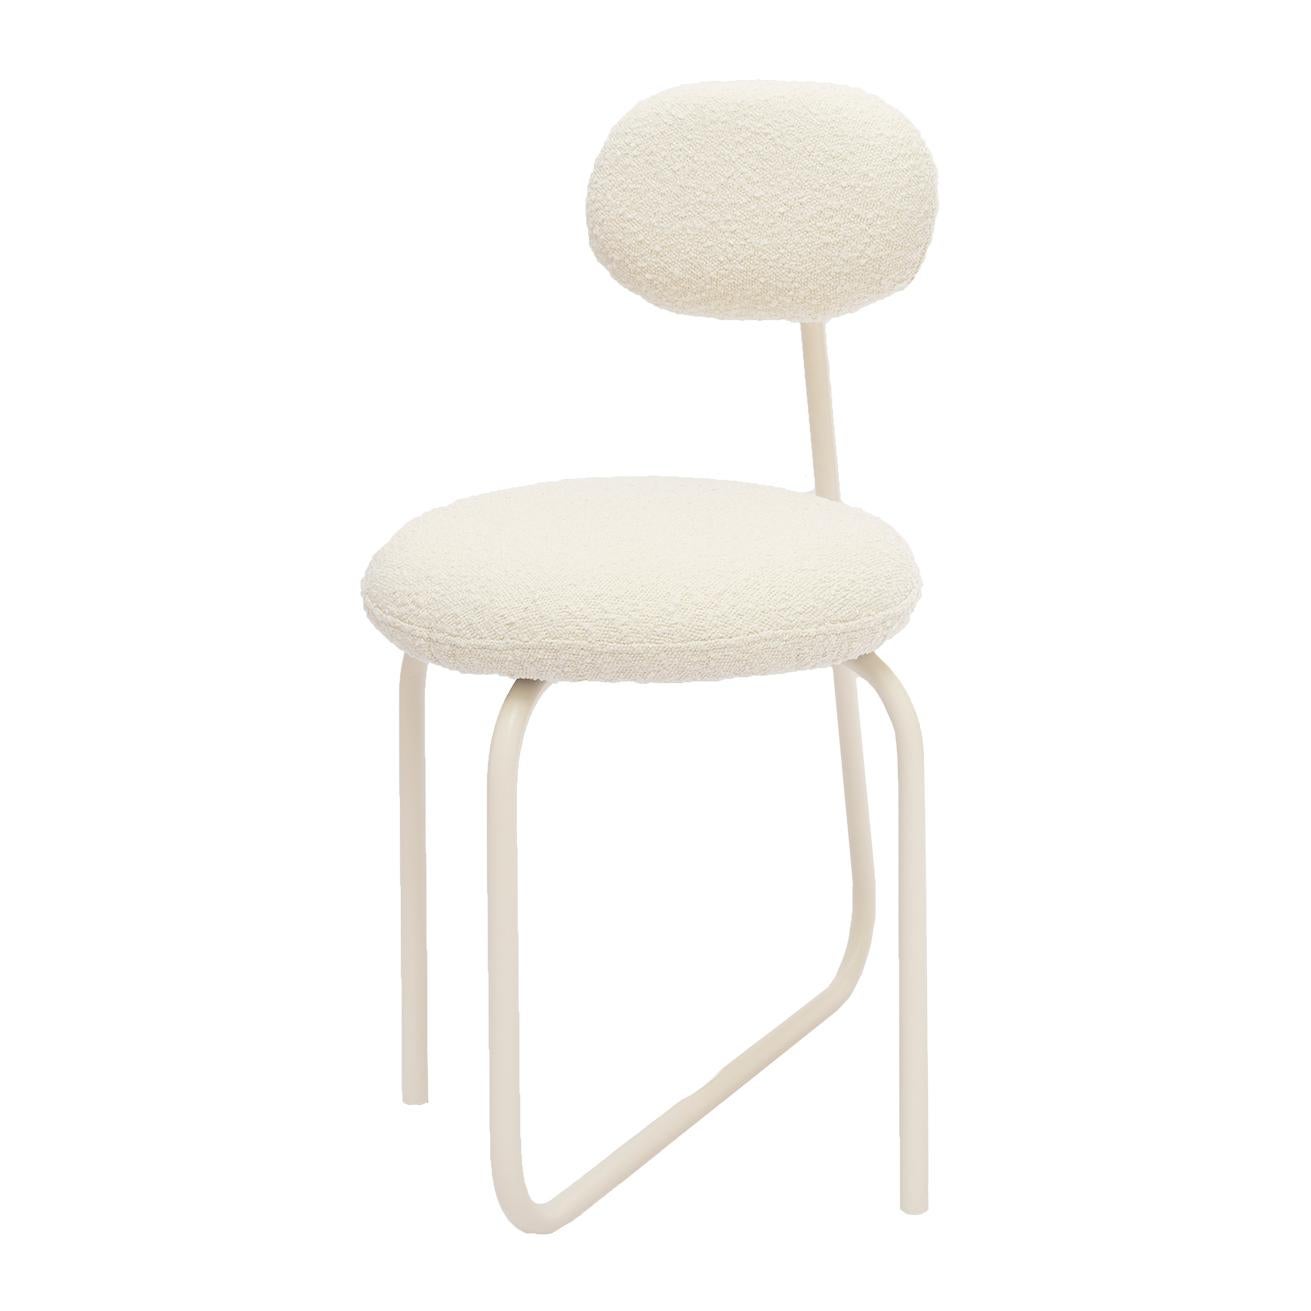 Objekt 101 Stuhl von NG Design
Abmessungen: B 50 x T 60 x H 84 cm
MATERIALIEN: Pulverbeschichteter Stahl, Bouclé-Gewebe

Auch verfügbar: Alle Objekte sind auf Anfrage in verschiedenen MATERIALEN und Farben erhältlich.

Der Object 101 Chair hat einen